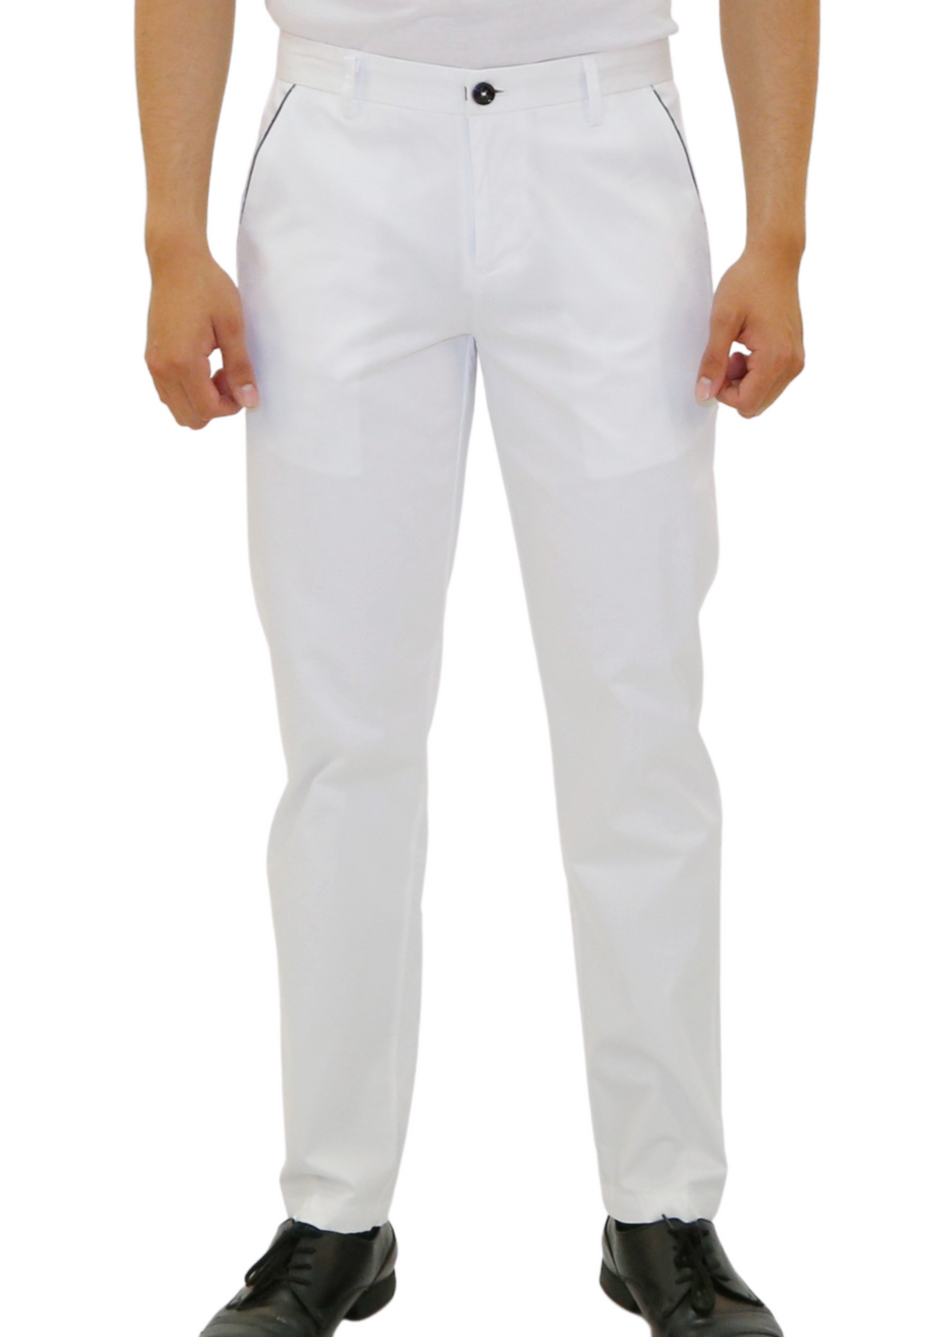 mens white dress pants